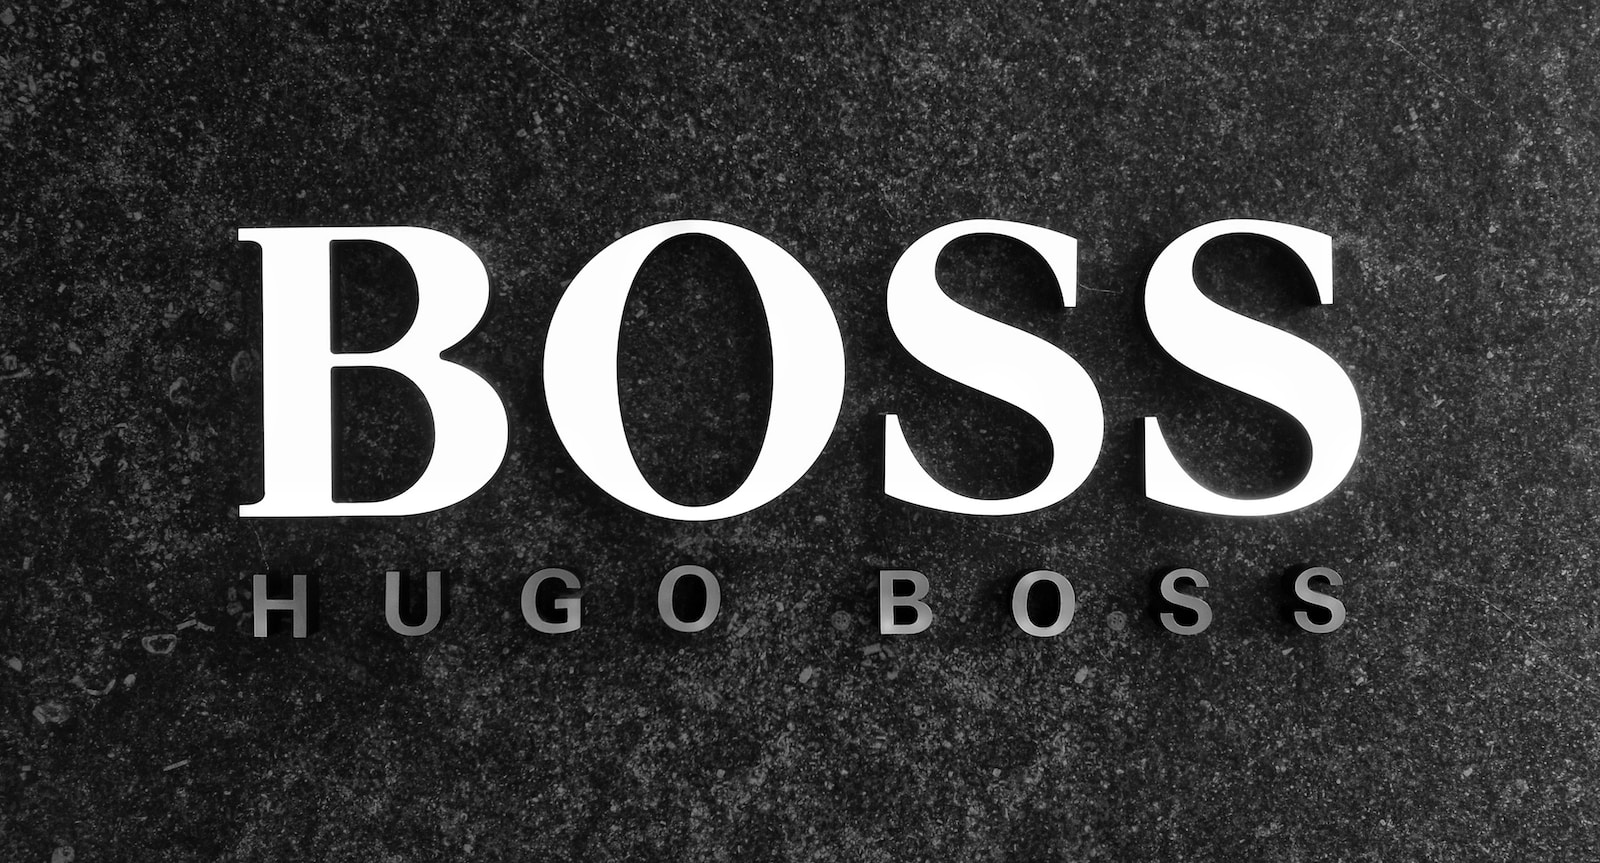 is hugo boss a designer brand